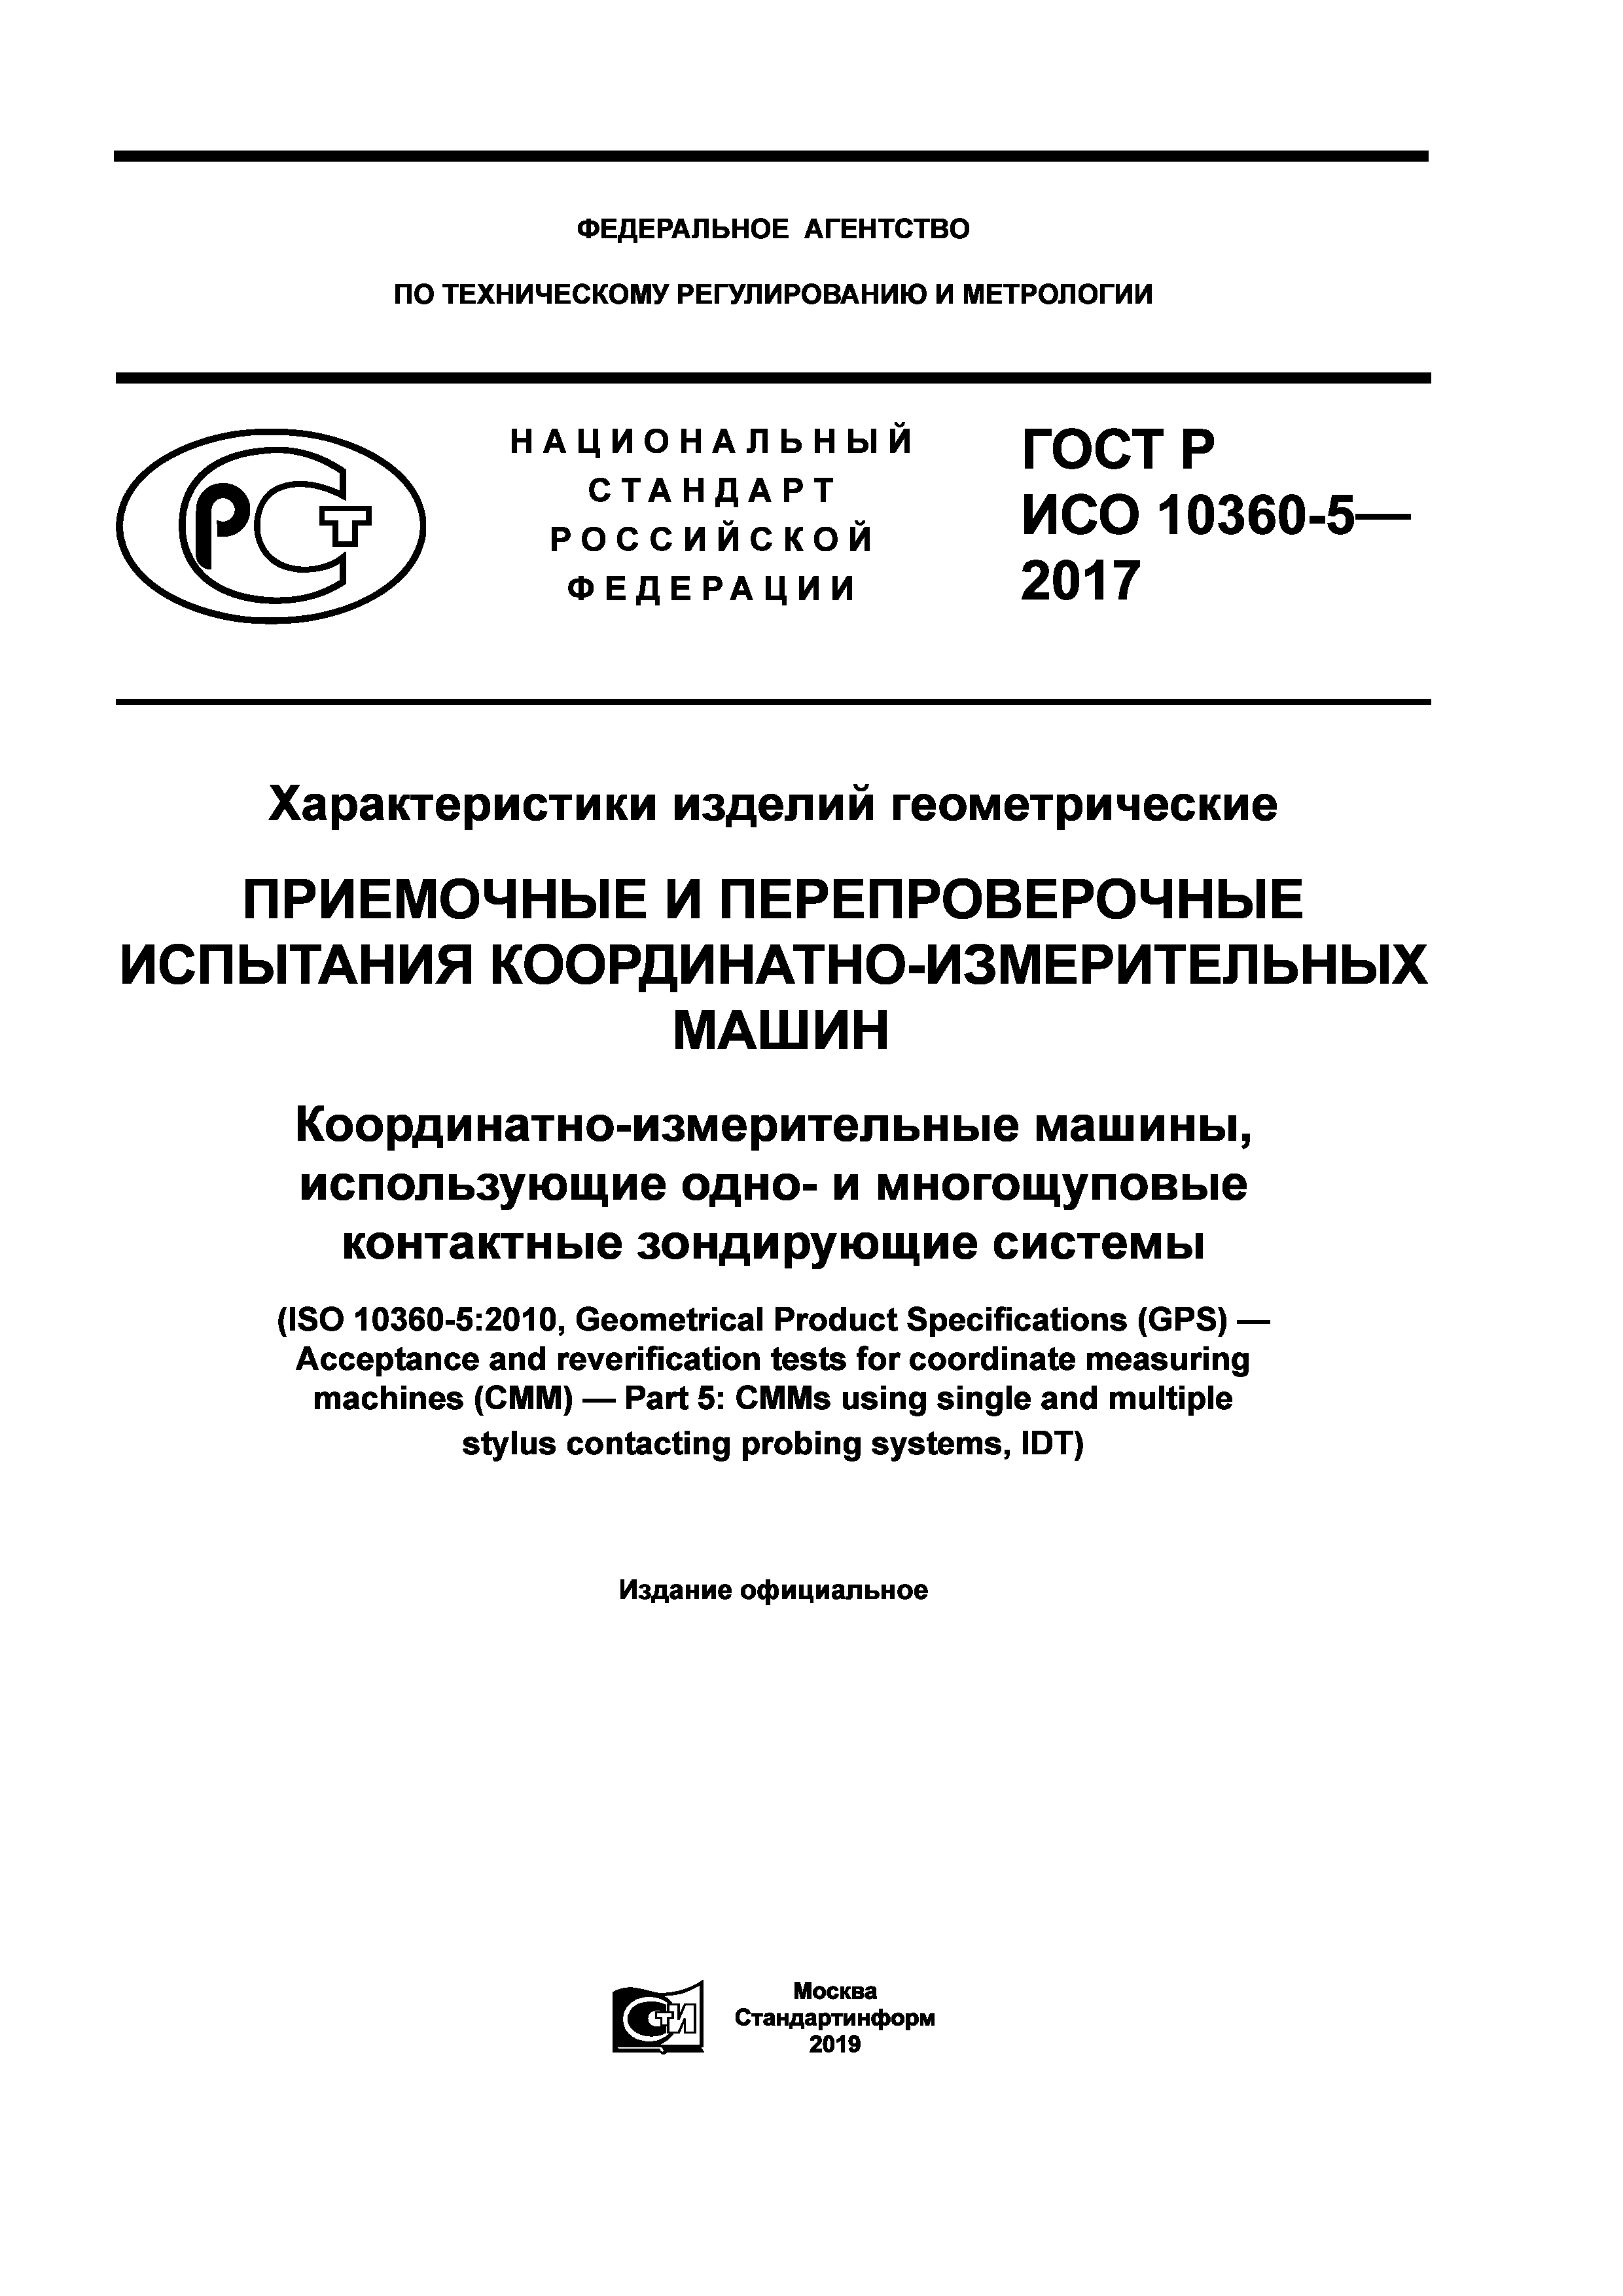 ГОСТ Р ИСО 10360-5-2017